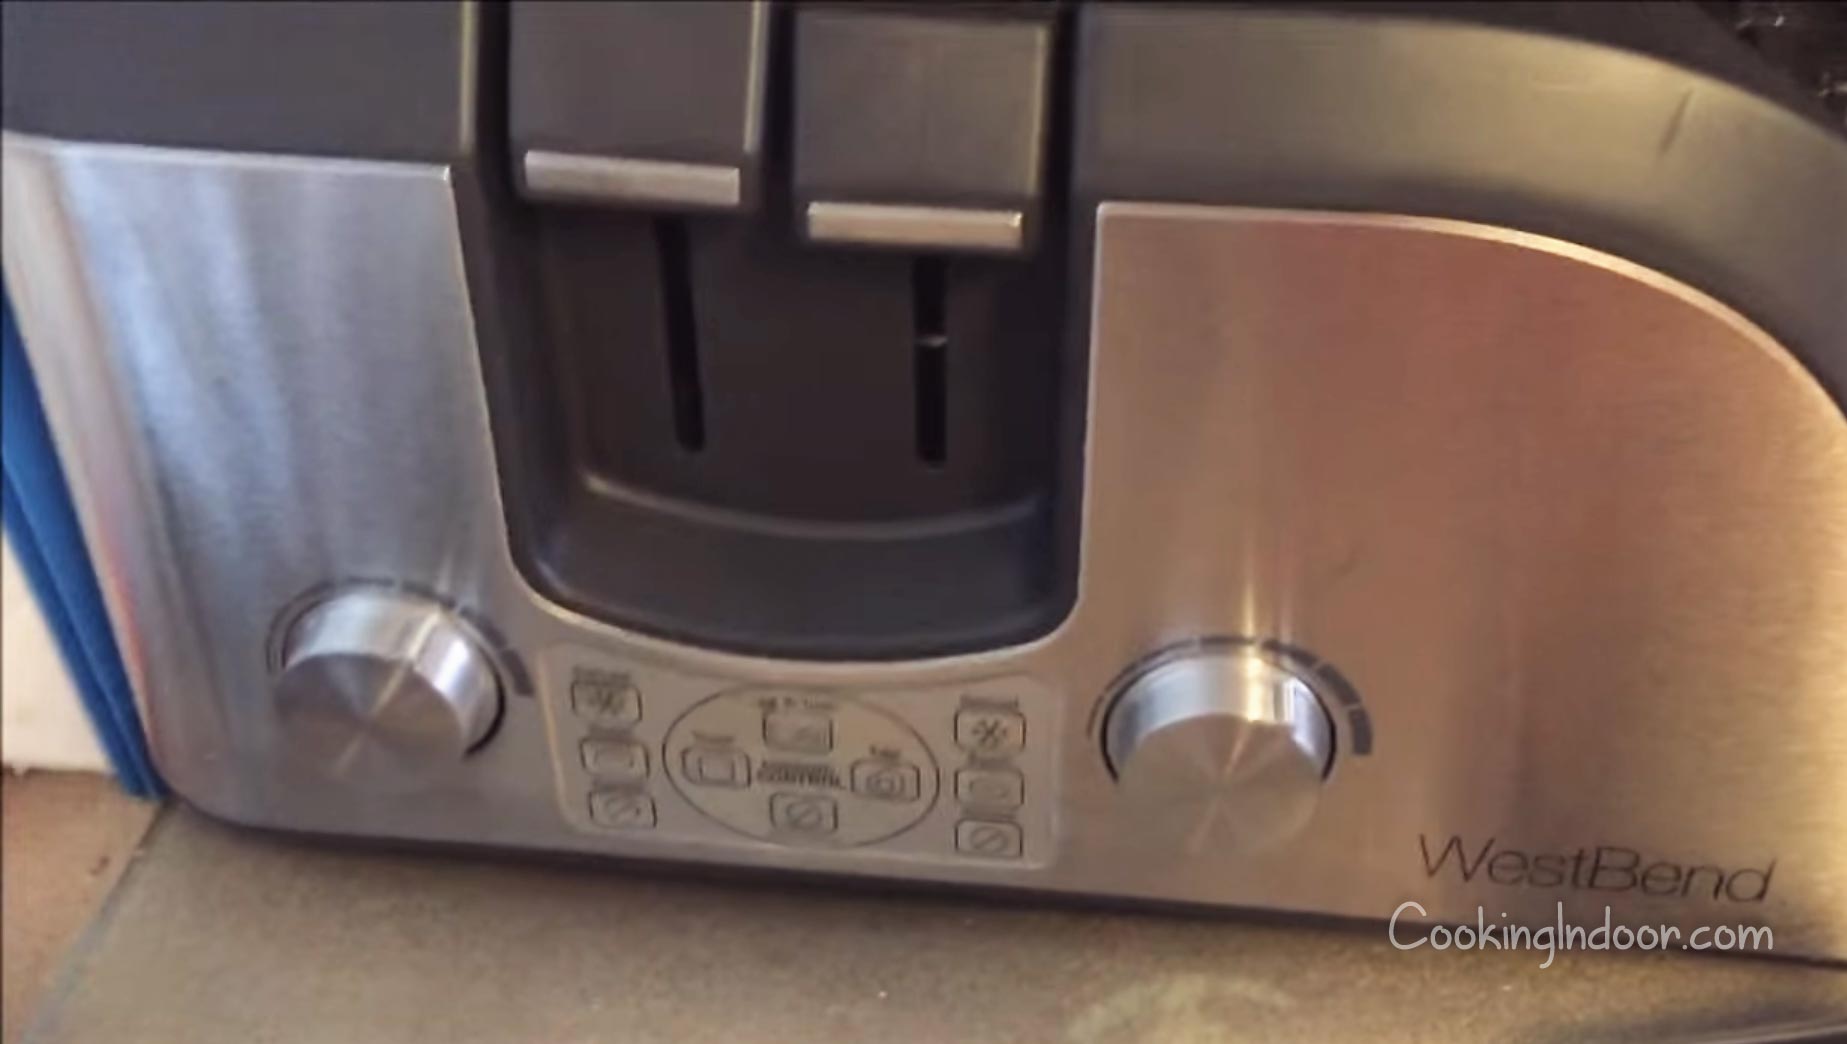 https://cookingindoor.com/wp-content/uploads/Best-West-Bend-toaster.jpg